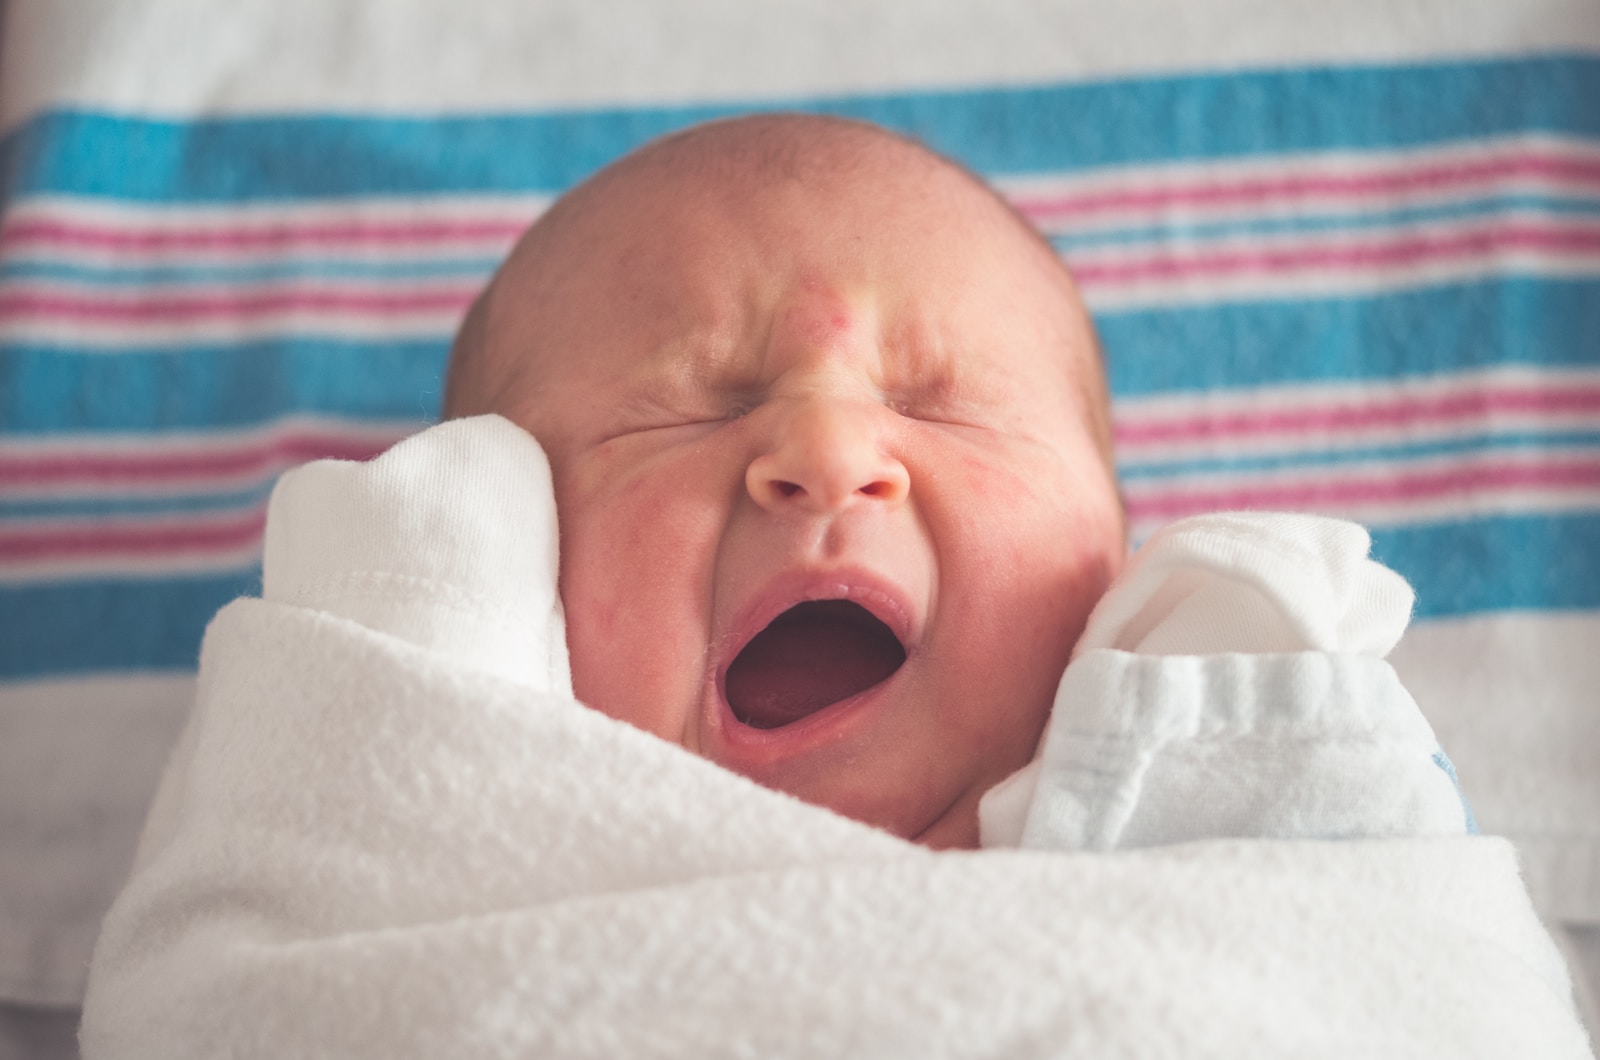 אסטמה של העור אצל תינוקות – כל מה שחשוב לדעת בנושא